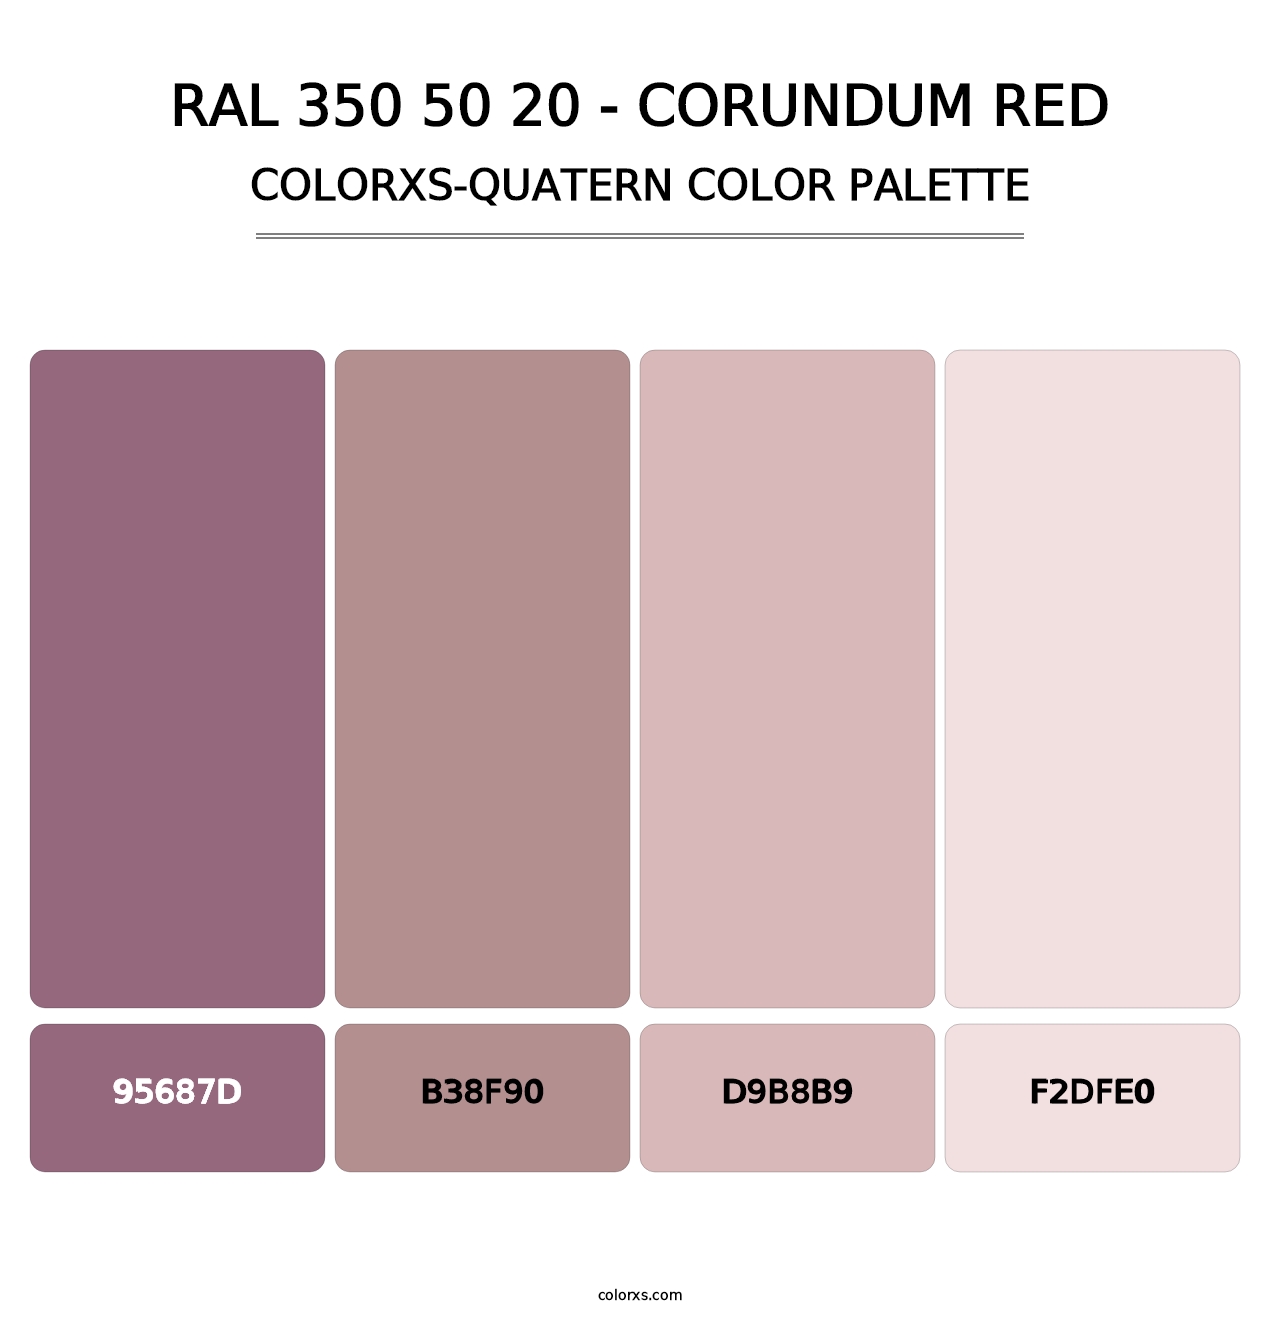 RAL 350 50 20 - Corundum Red - Colorxs Quatern Palette